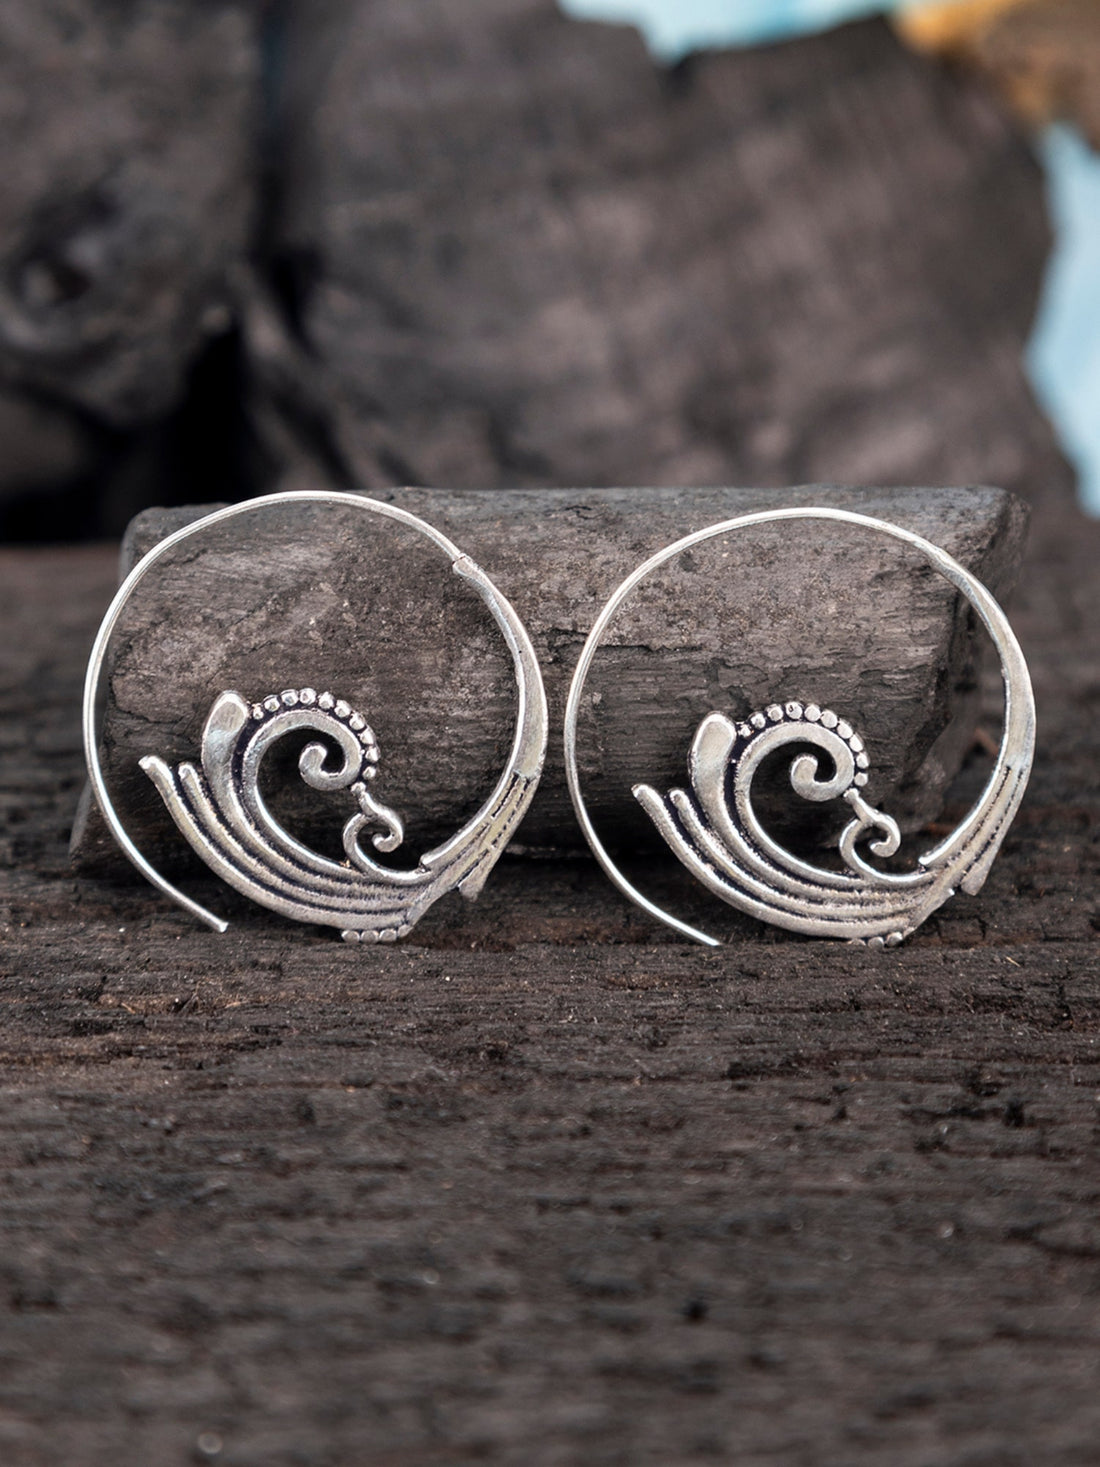 Daily Wear Hoops Earrings - Western Silver-Plated Brass Earrings By Studio One Love